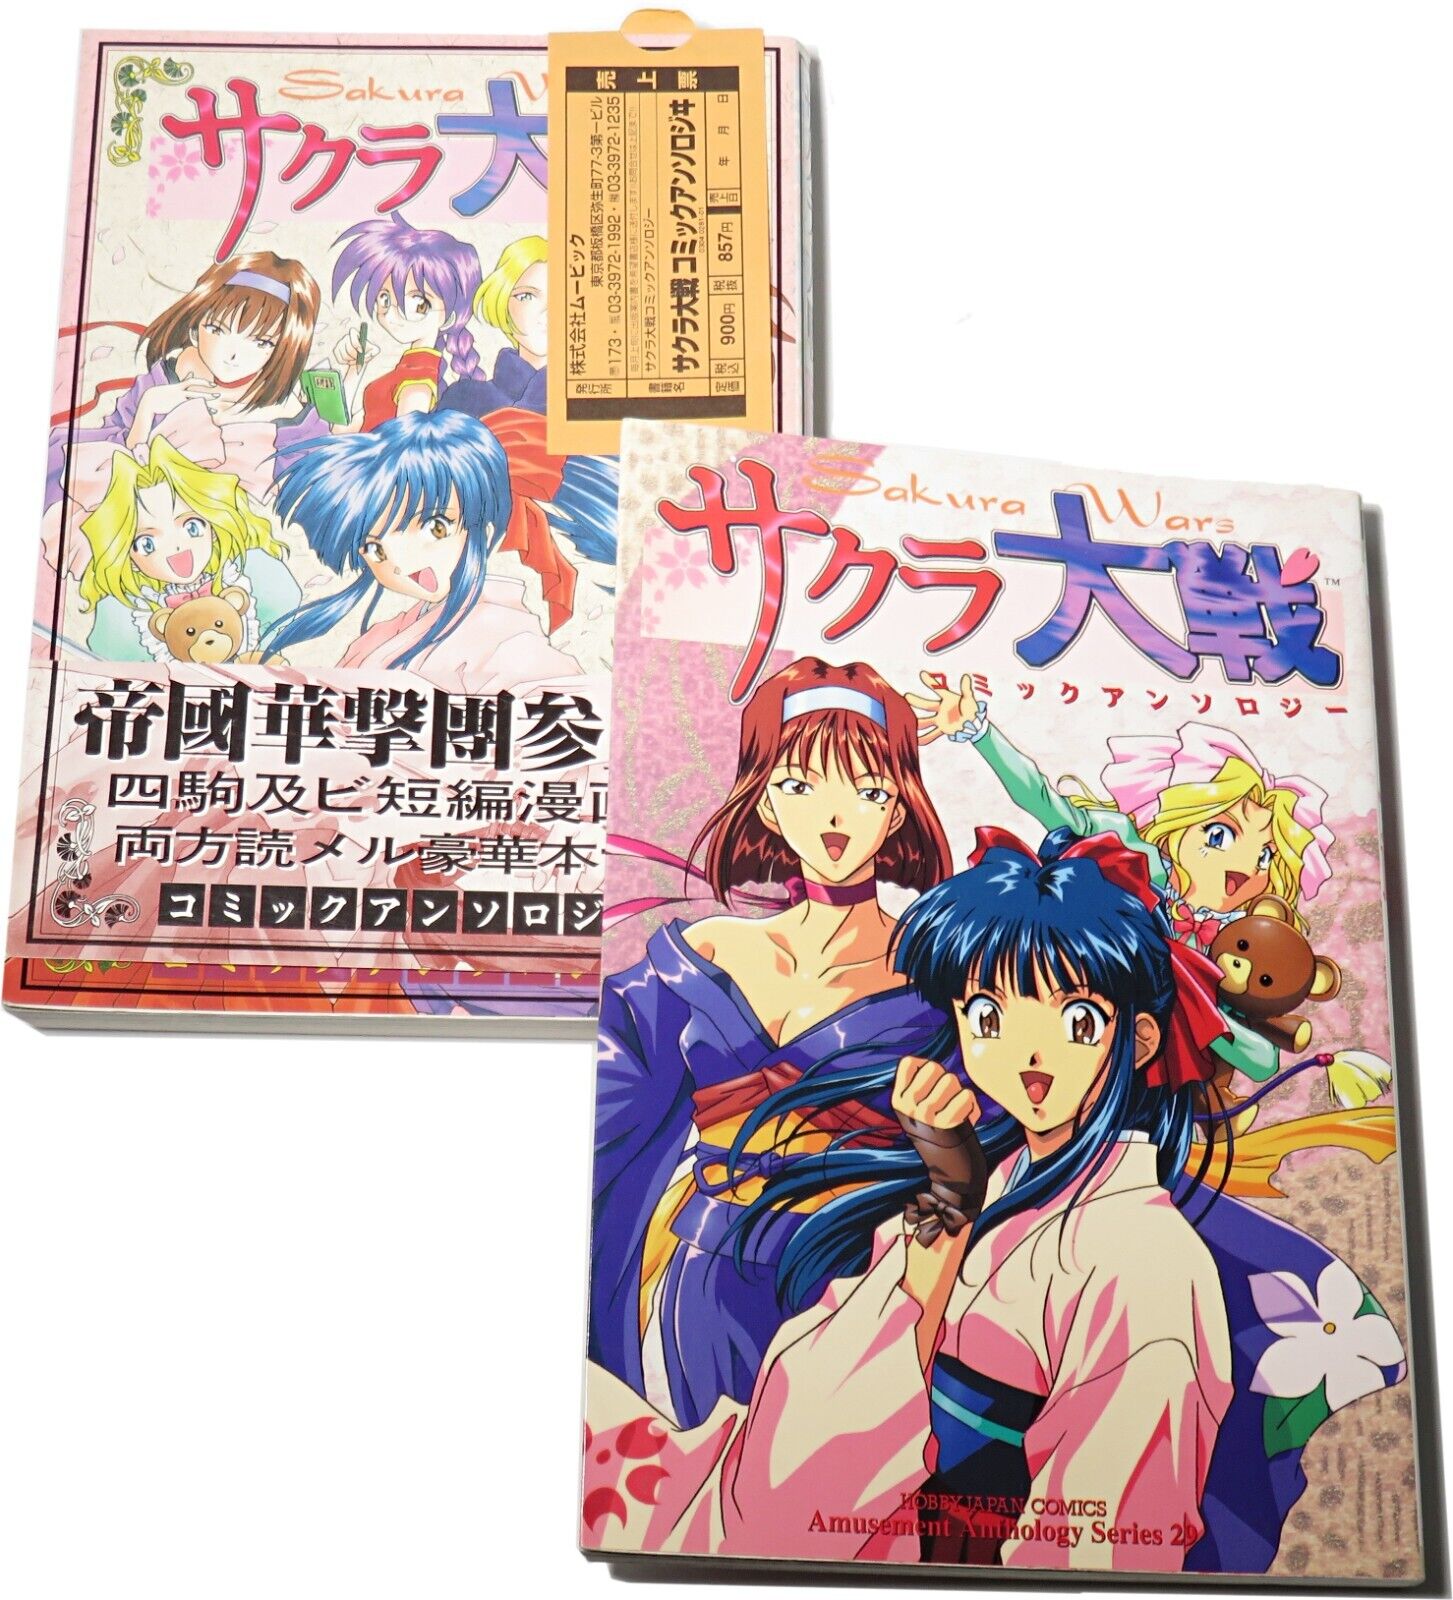 Sakura Wars Comic Anthology Books Japan Import Sega 1996-97 Manga Lot of 2